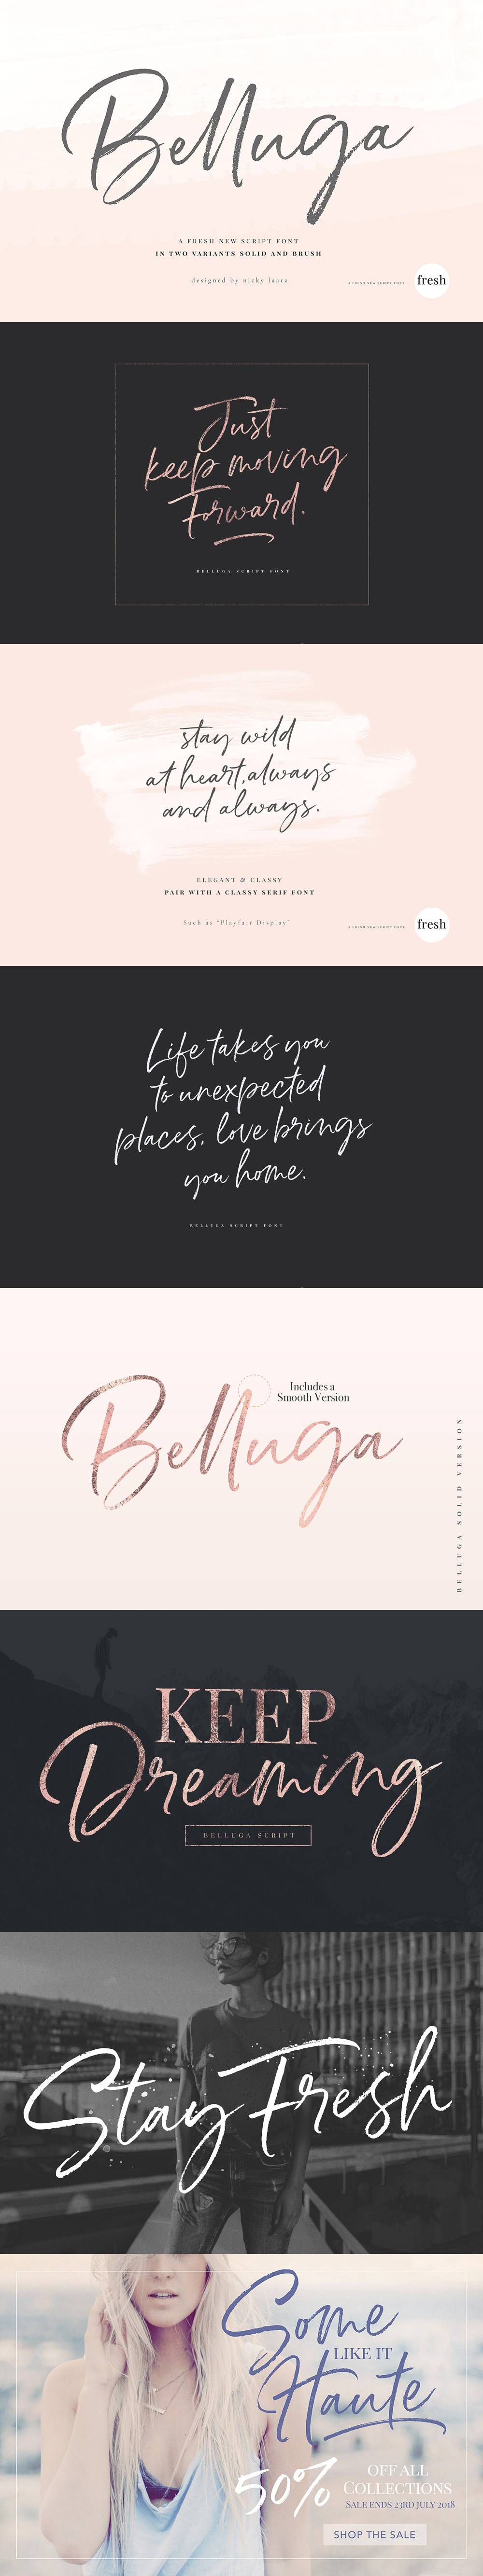 Belluga - A New Brush Script Font